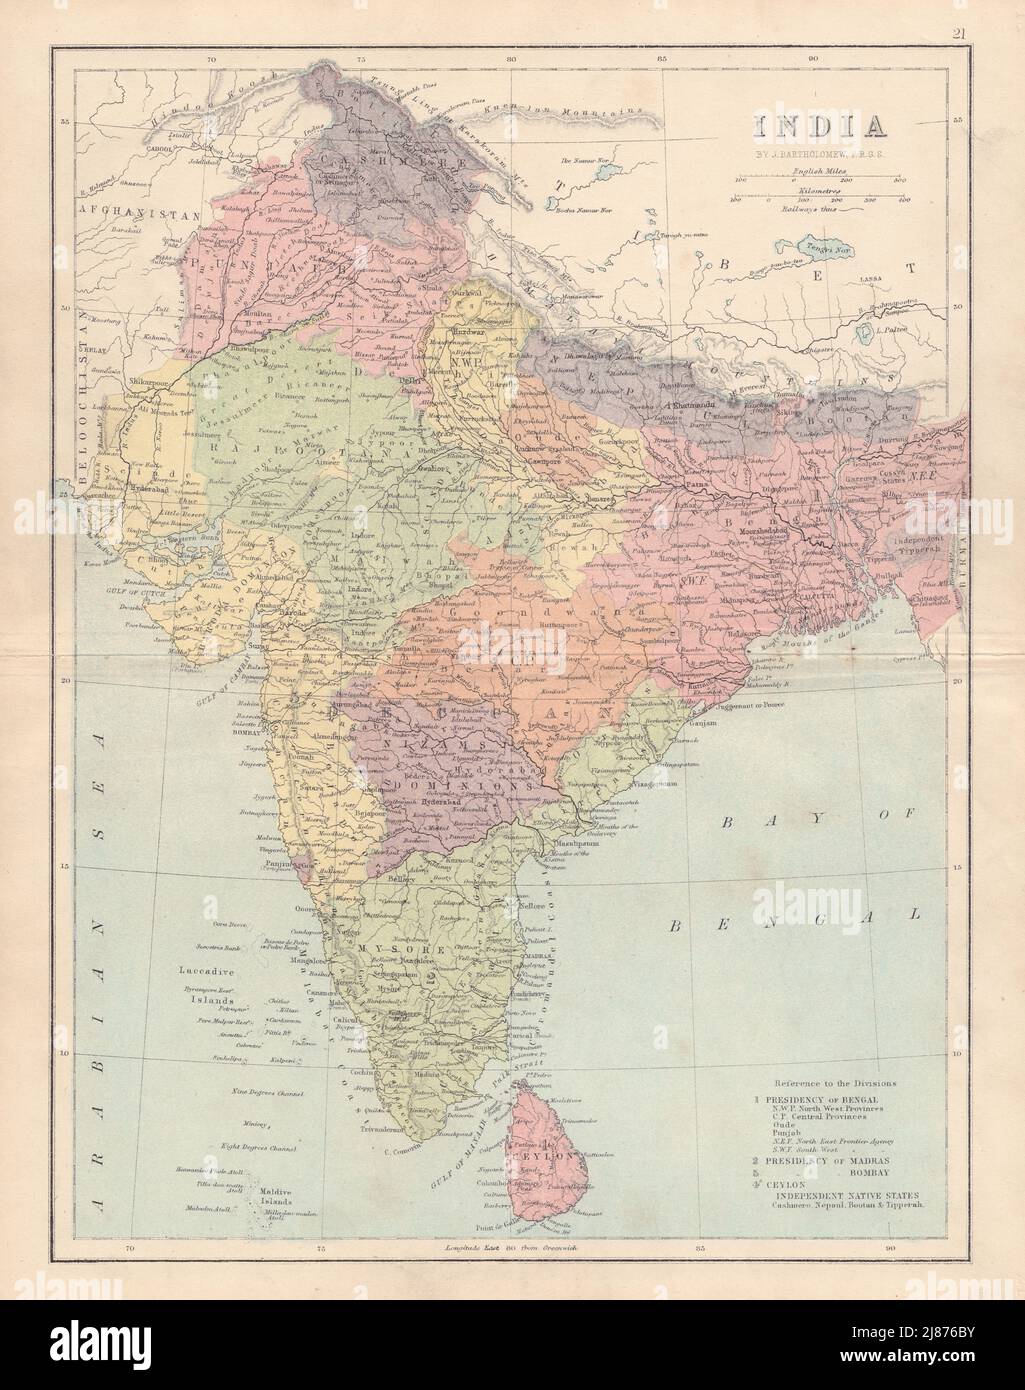 INDIA BRITÁNICA. Mostrando estados, asentamientos franceses y portugueses. Mapa COLLINS 1873 Foto de stock